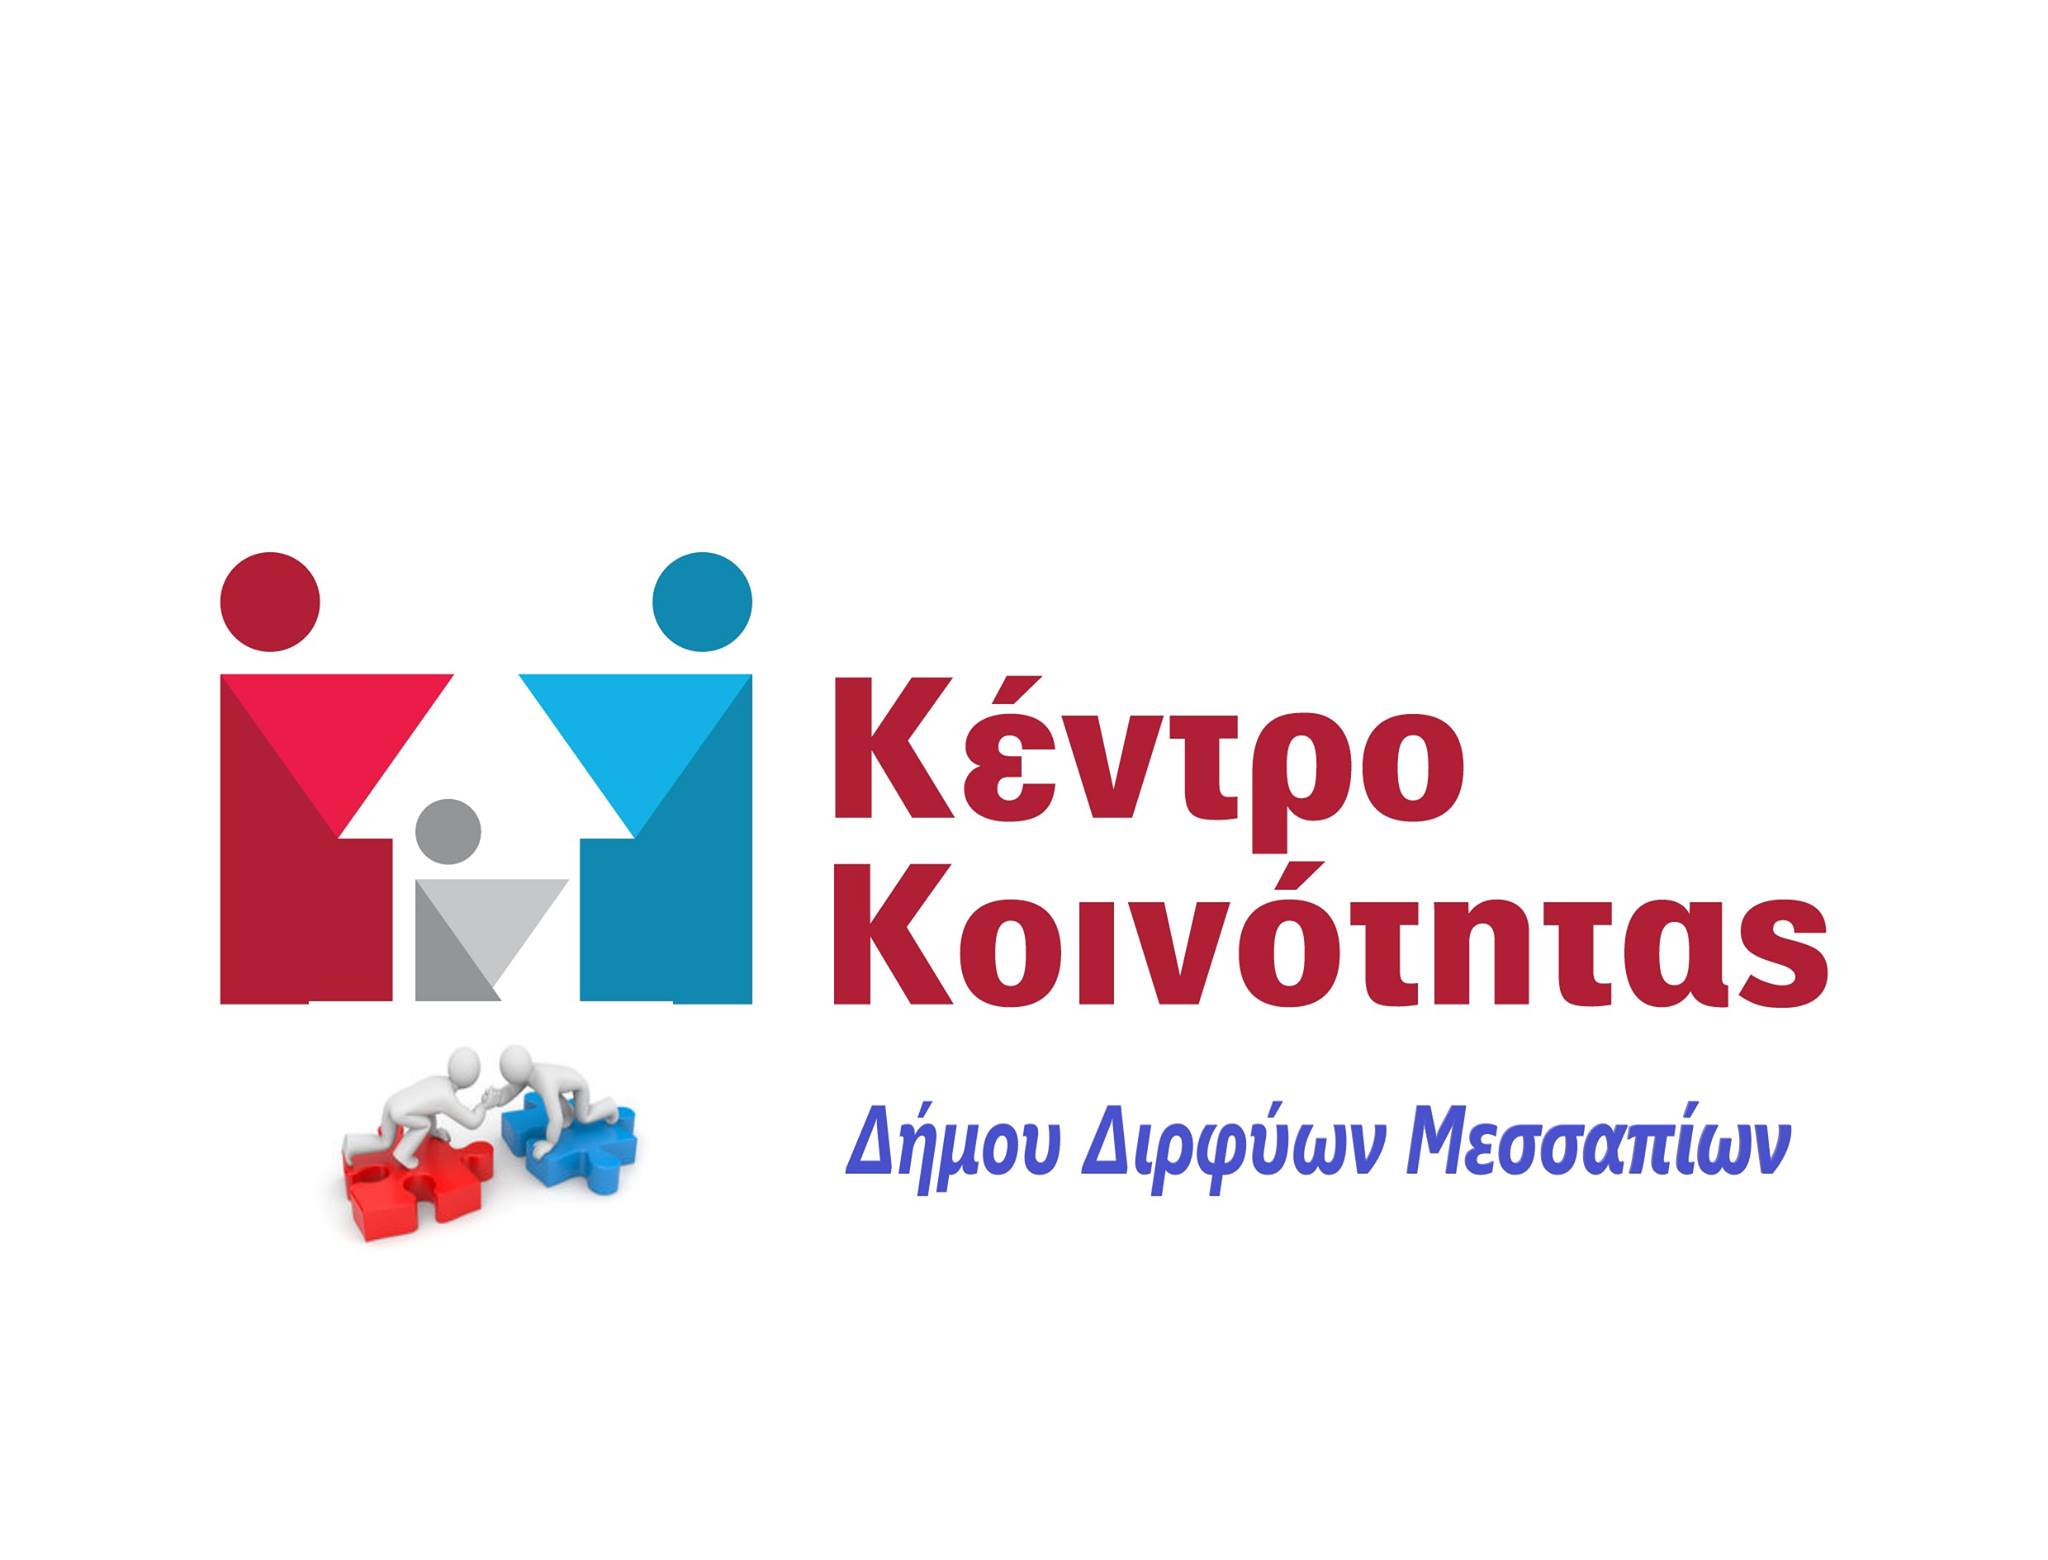 Σημαντική δωρεά από την Ολυμπιακή Ζυθοποιία για τους άπορους του Δήμου Διρφύων Μεσσαπίων